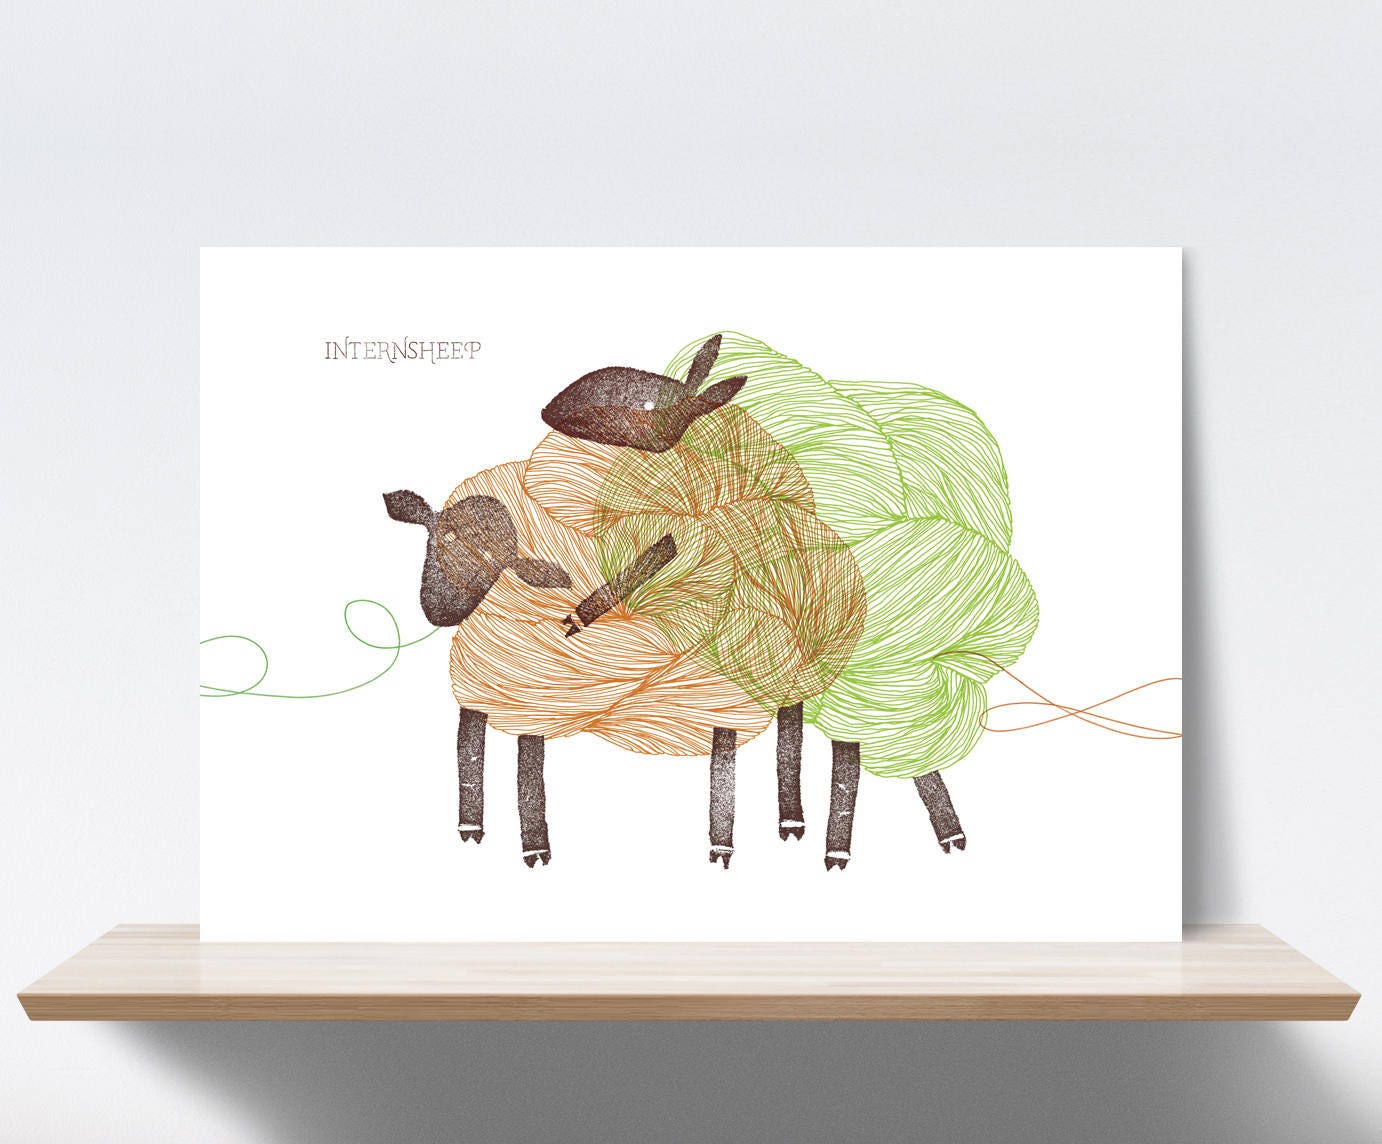 Wol schapen verbonden door een garen van wol stagiaires foto foto